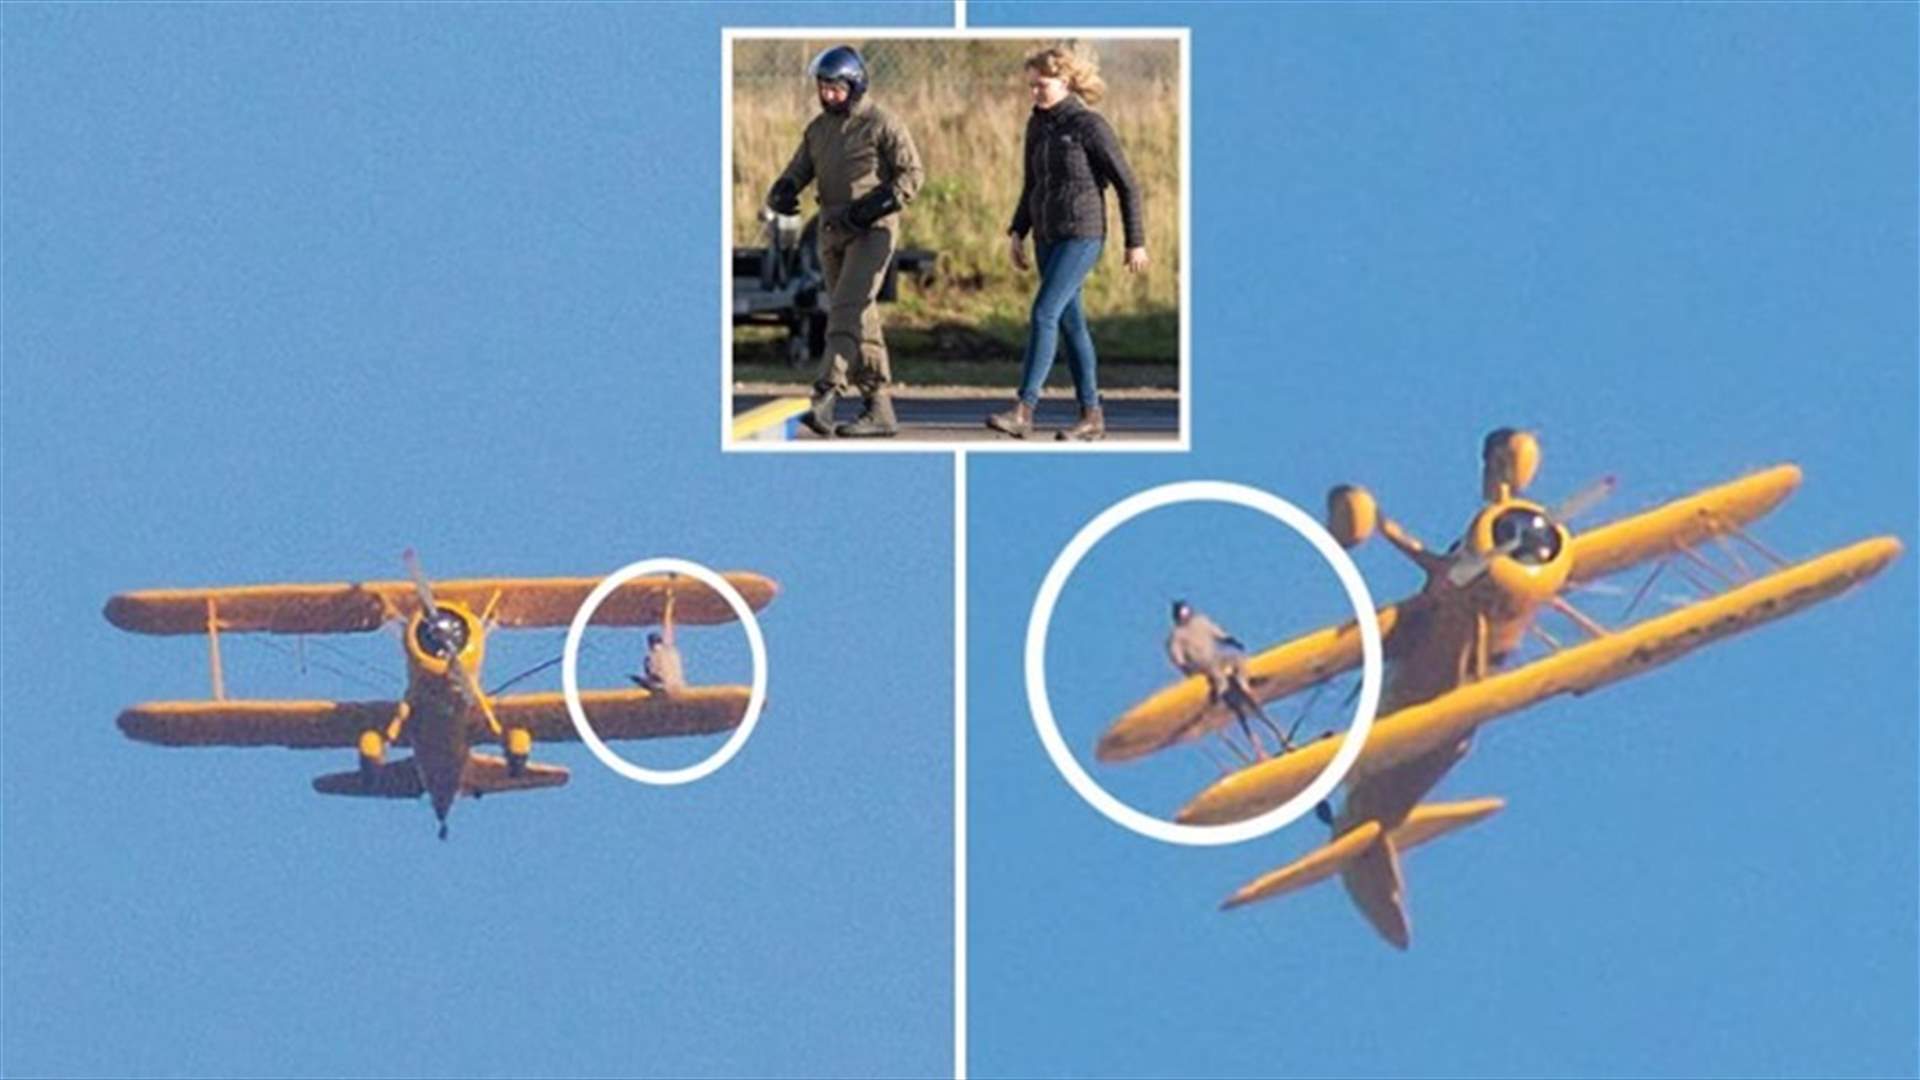 في &quot;مهمة&quot; جديدة ... توم كروز يخوض مغامرات جريئة على جناح طائرة (صور)